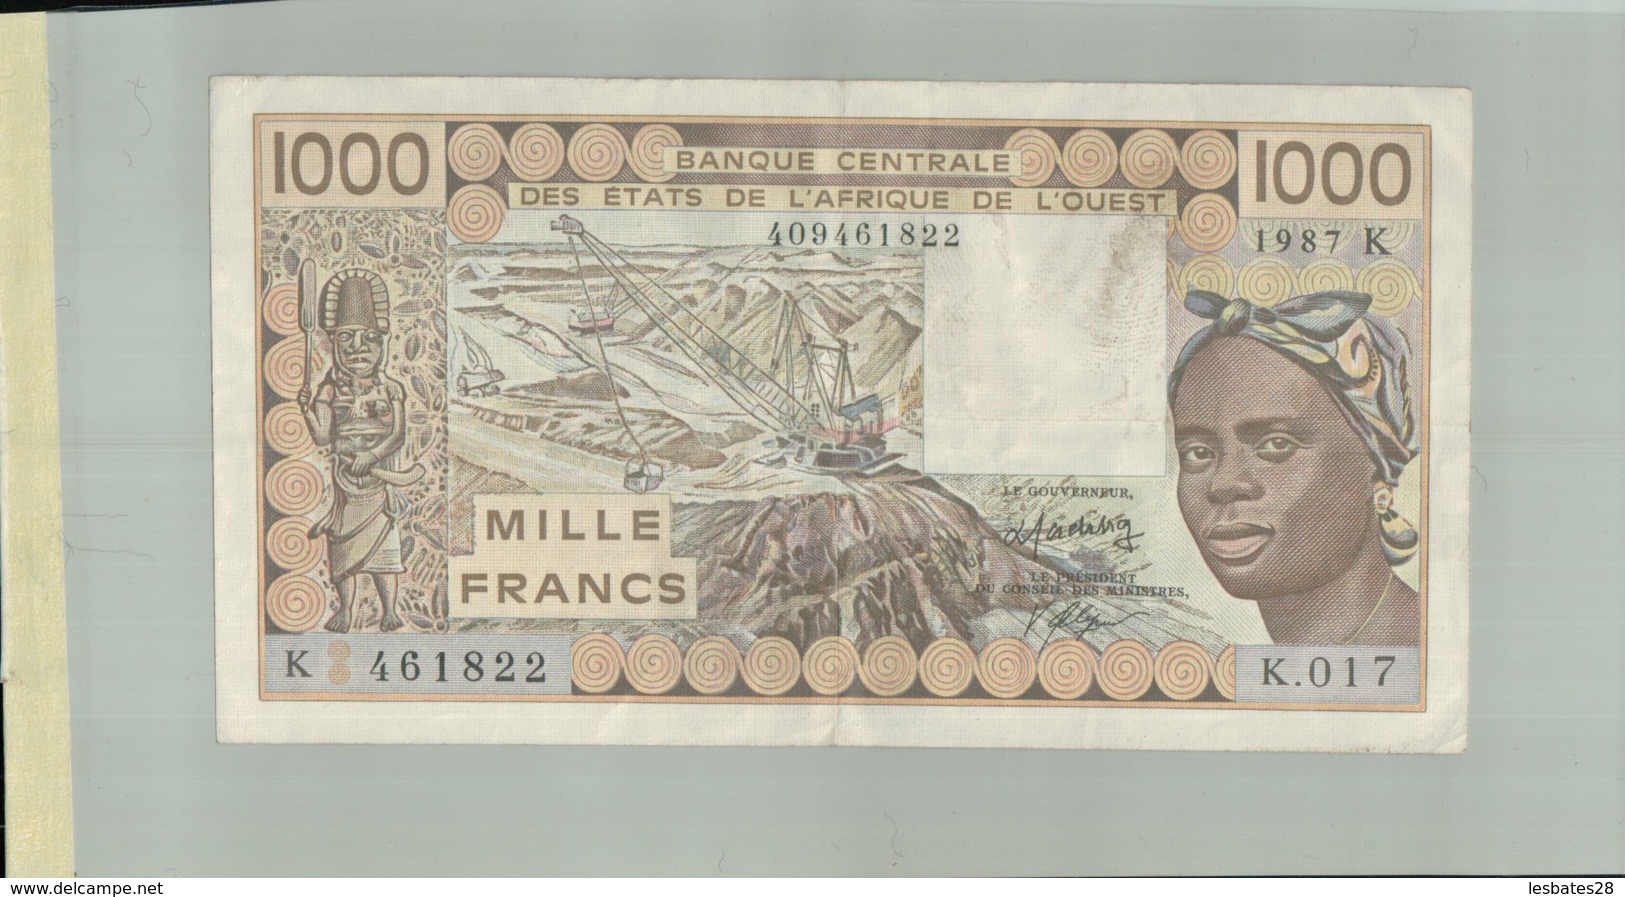 BILLET DE BANQUE  CENTRALE DES ETATS DE L'AFRIQUE DE L'OUEST   1000  " SENEGAL" "1987 K"  Sept  2019  Alb 16 - États D'Afrique De L'Ouest